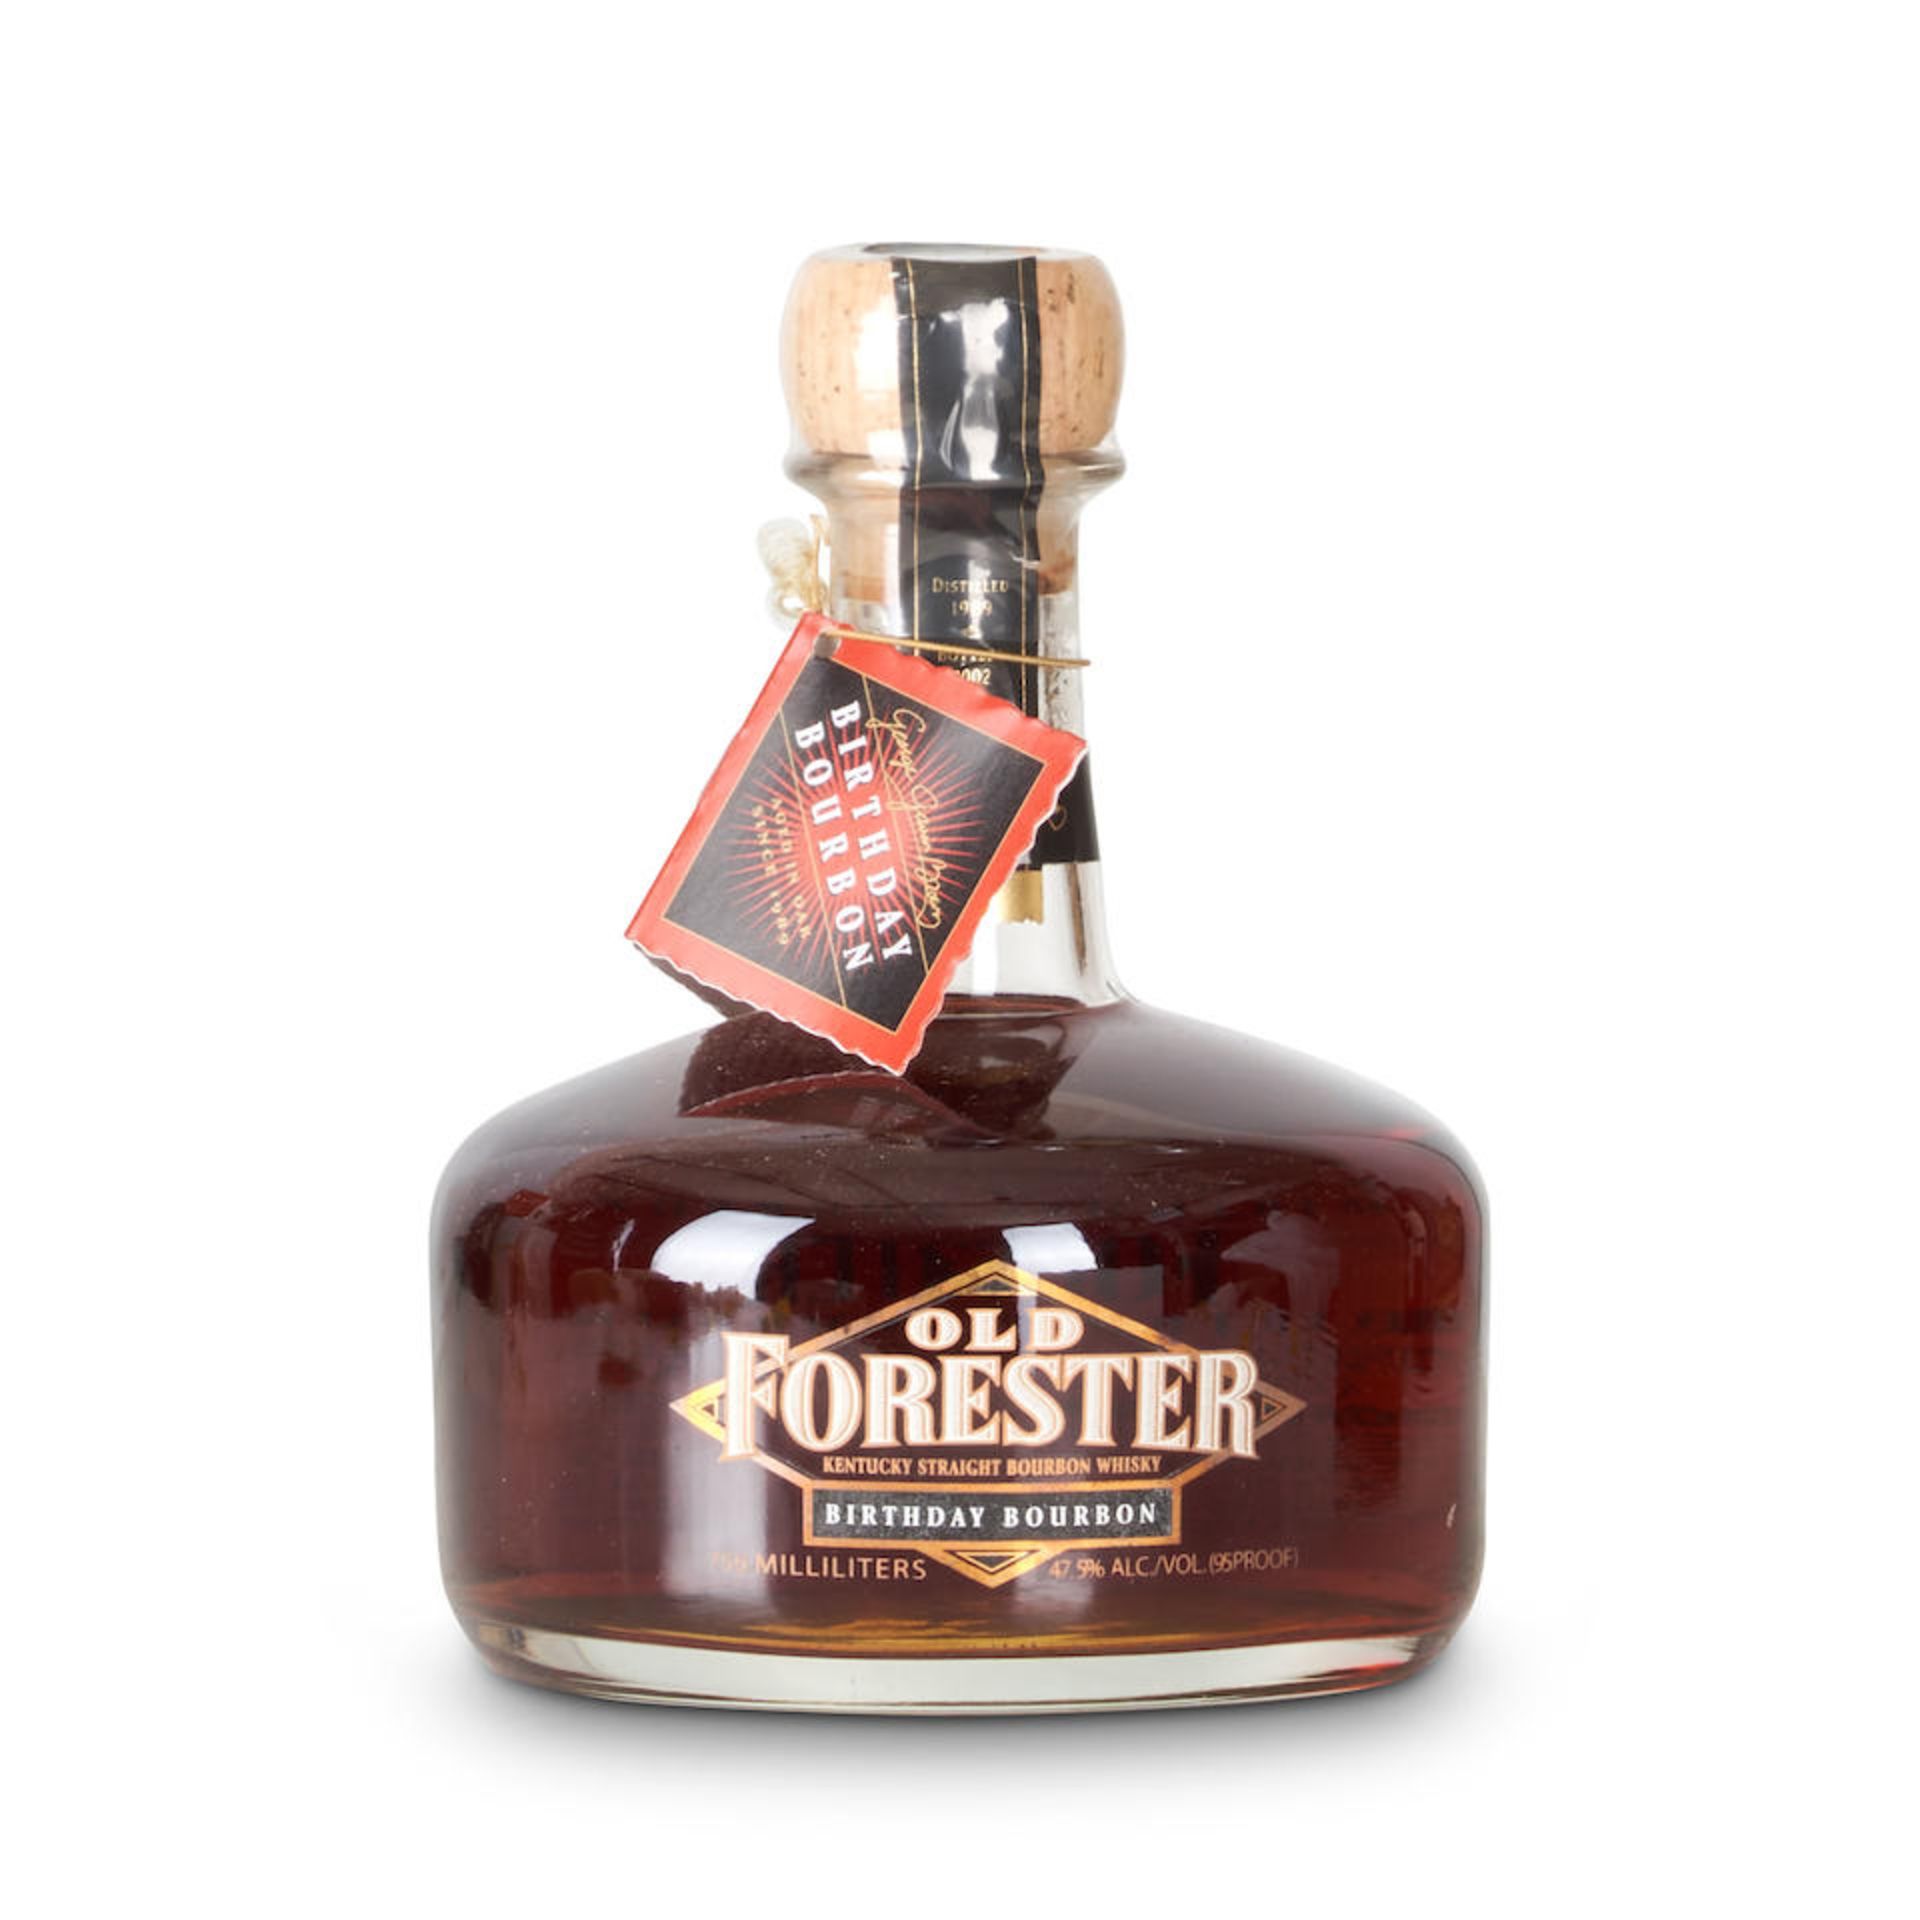 Old Forester Birthday Bourbon 2002 (1 750ml bottle)